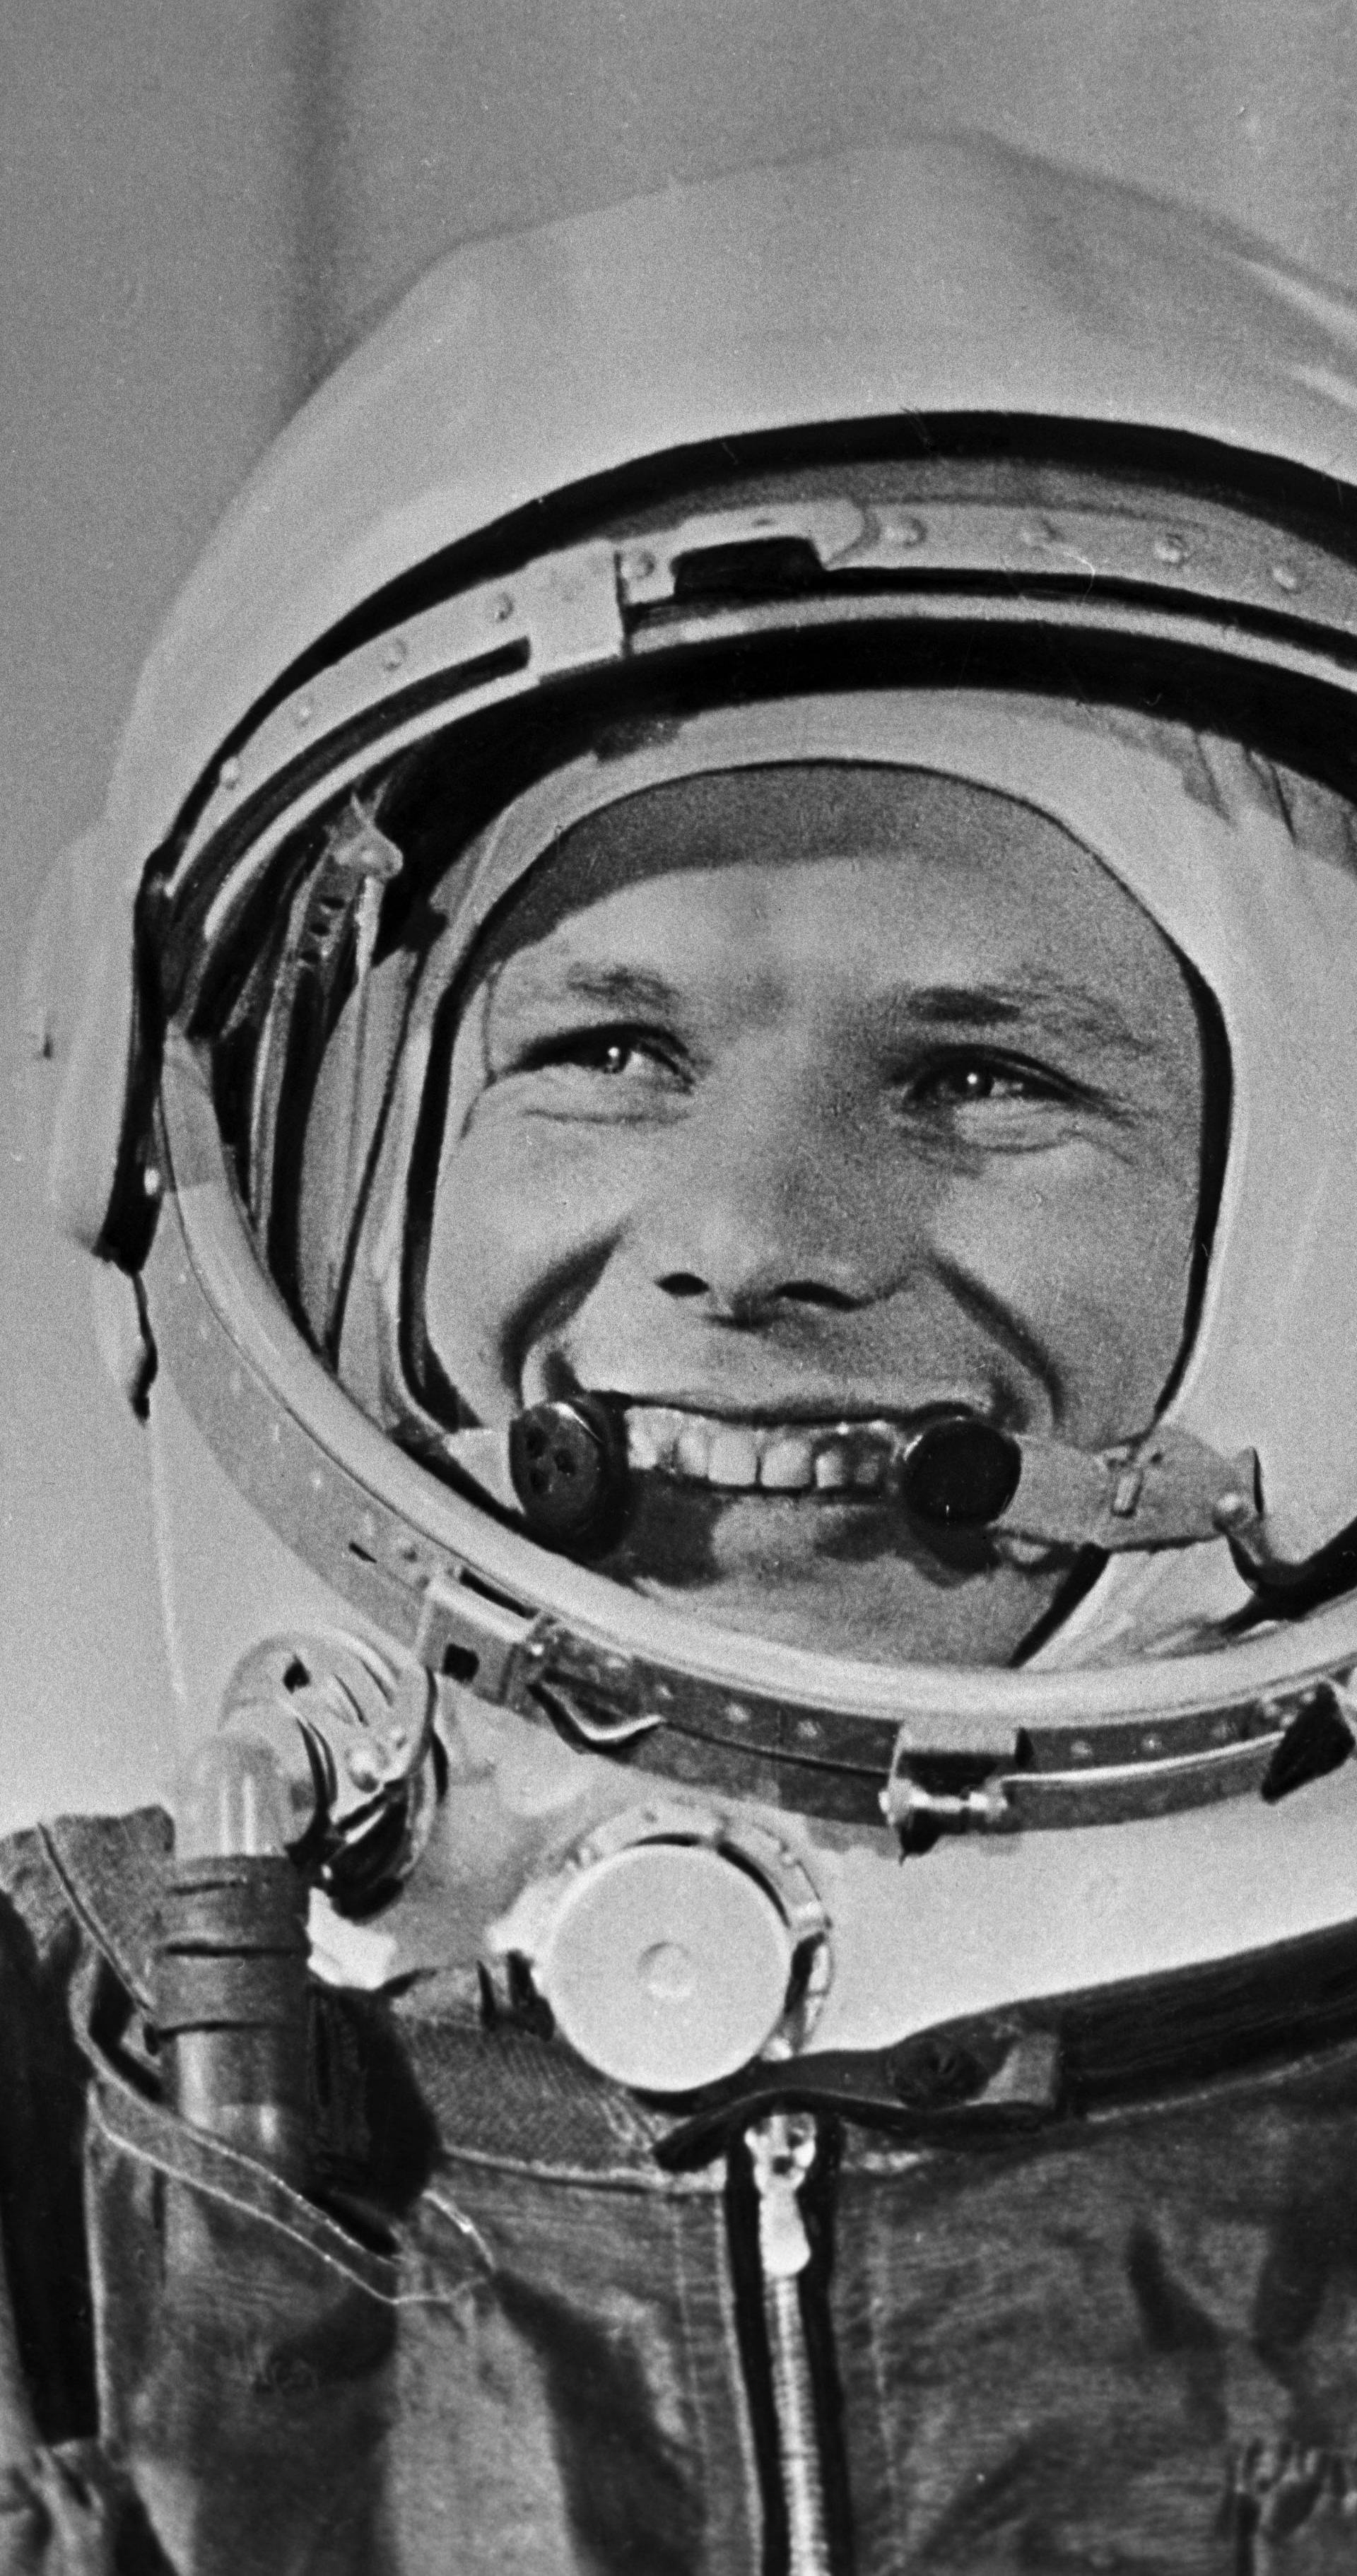 Pilot and Cosmonaut Yury Gagarin